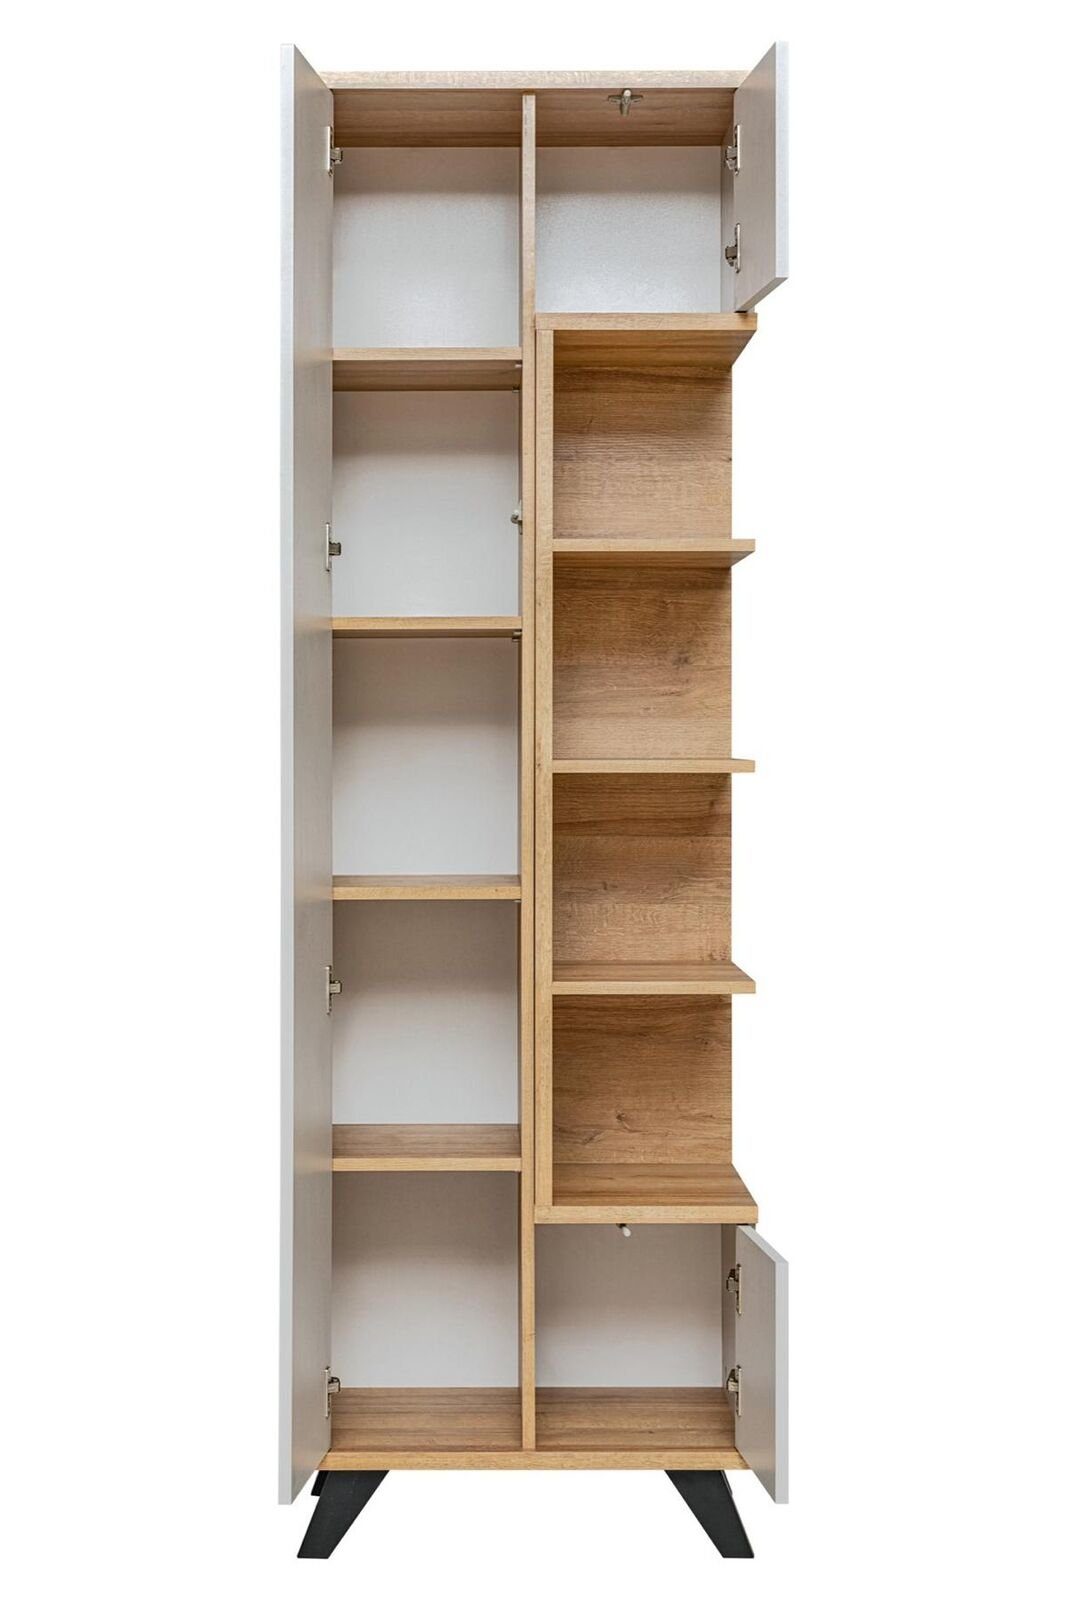 Holz Europa in Design Made Regal Möbel Luxus JVmoebel Braun, Bücherschrank Bücherregal